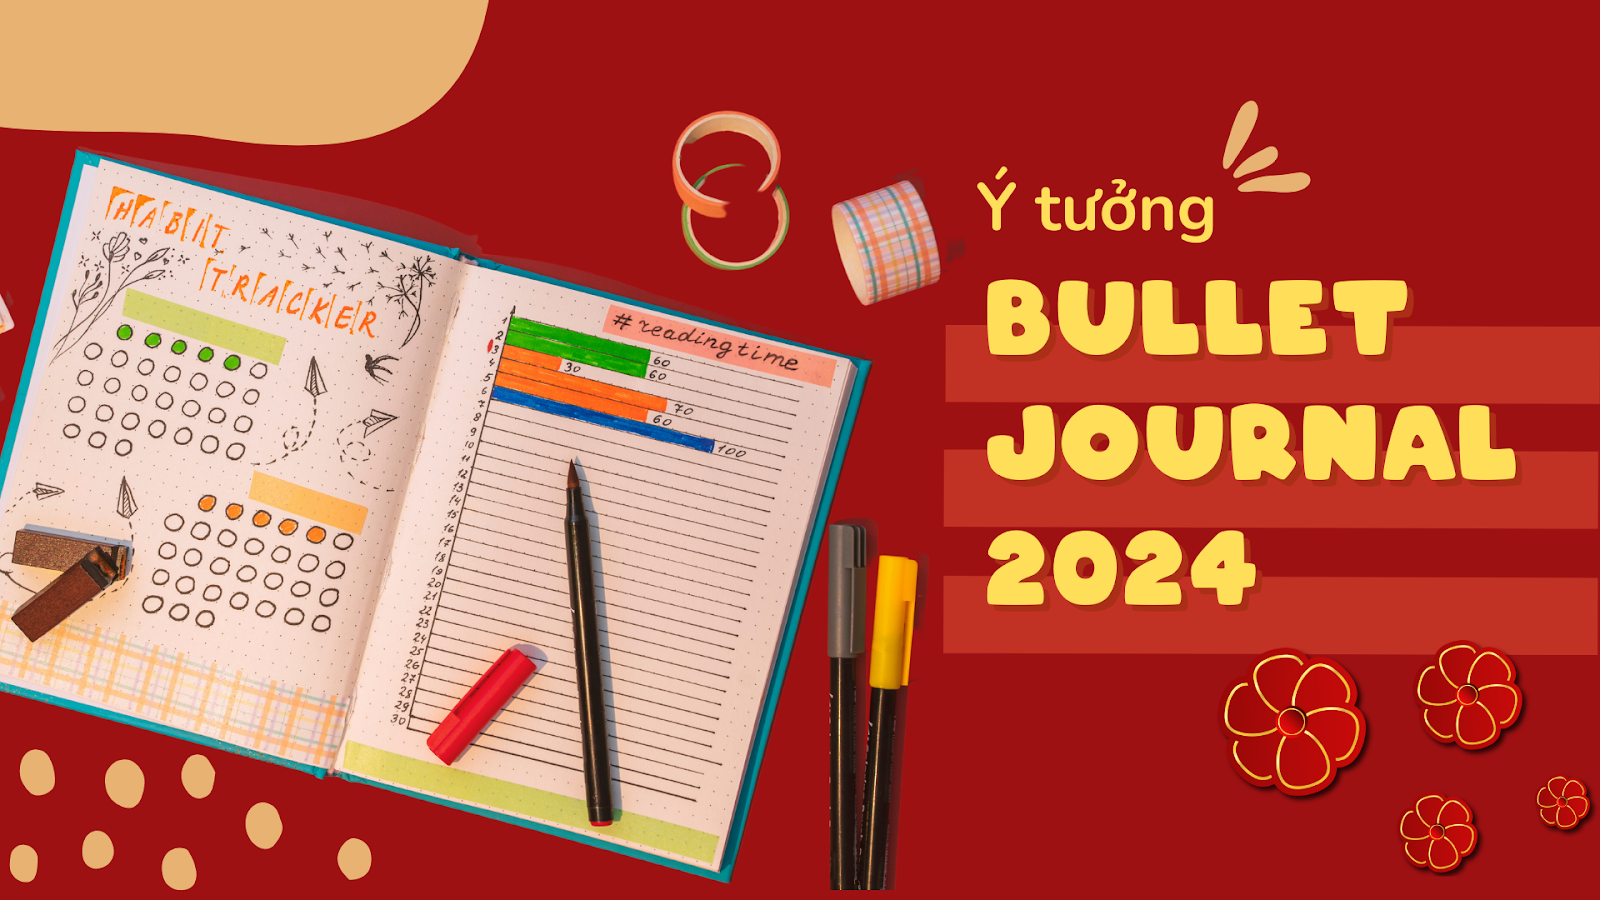 Hướng dẫn trang trí Bullet Journal cho năm mới là một ý tưởng thú vị cho dịp Tết 2024